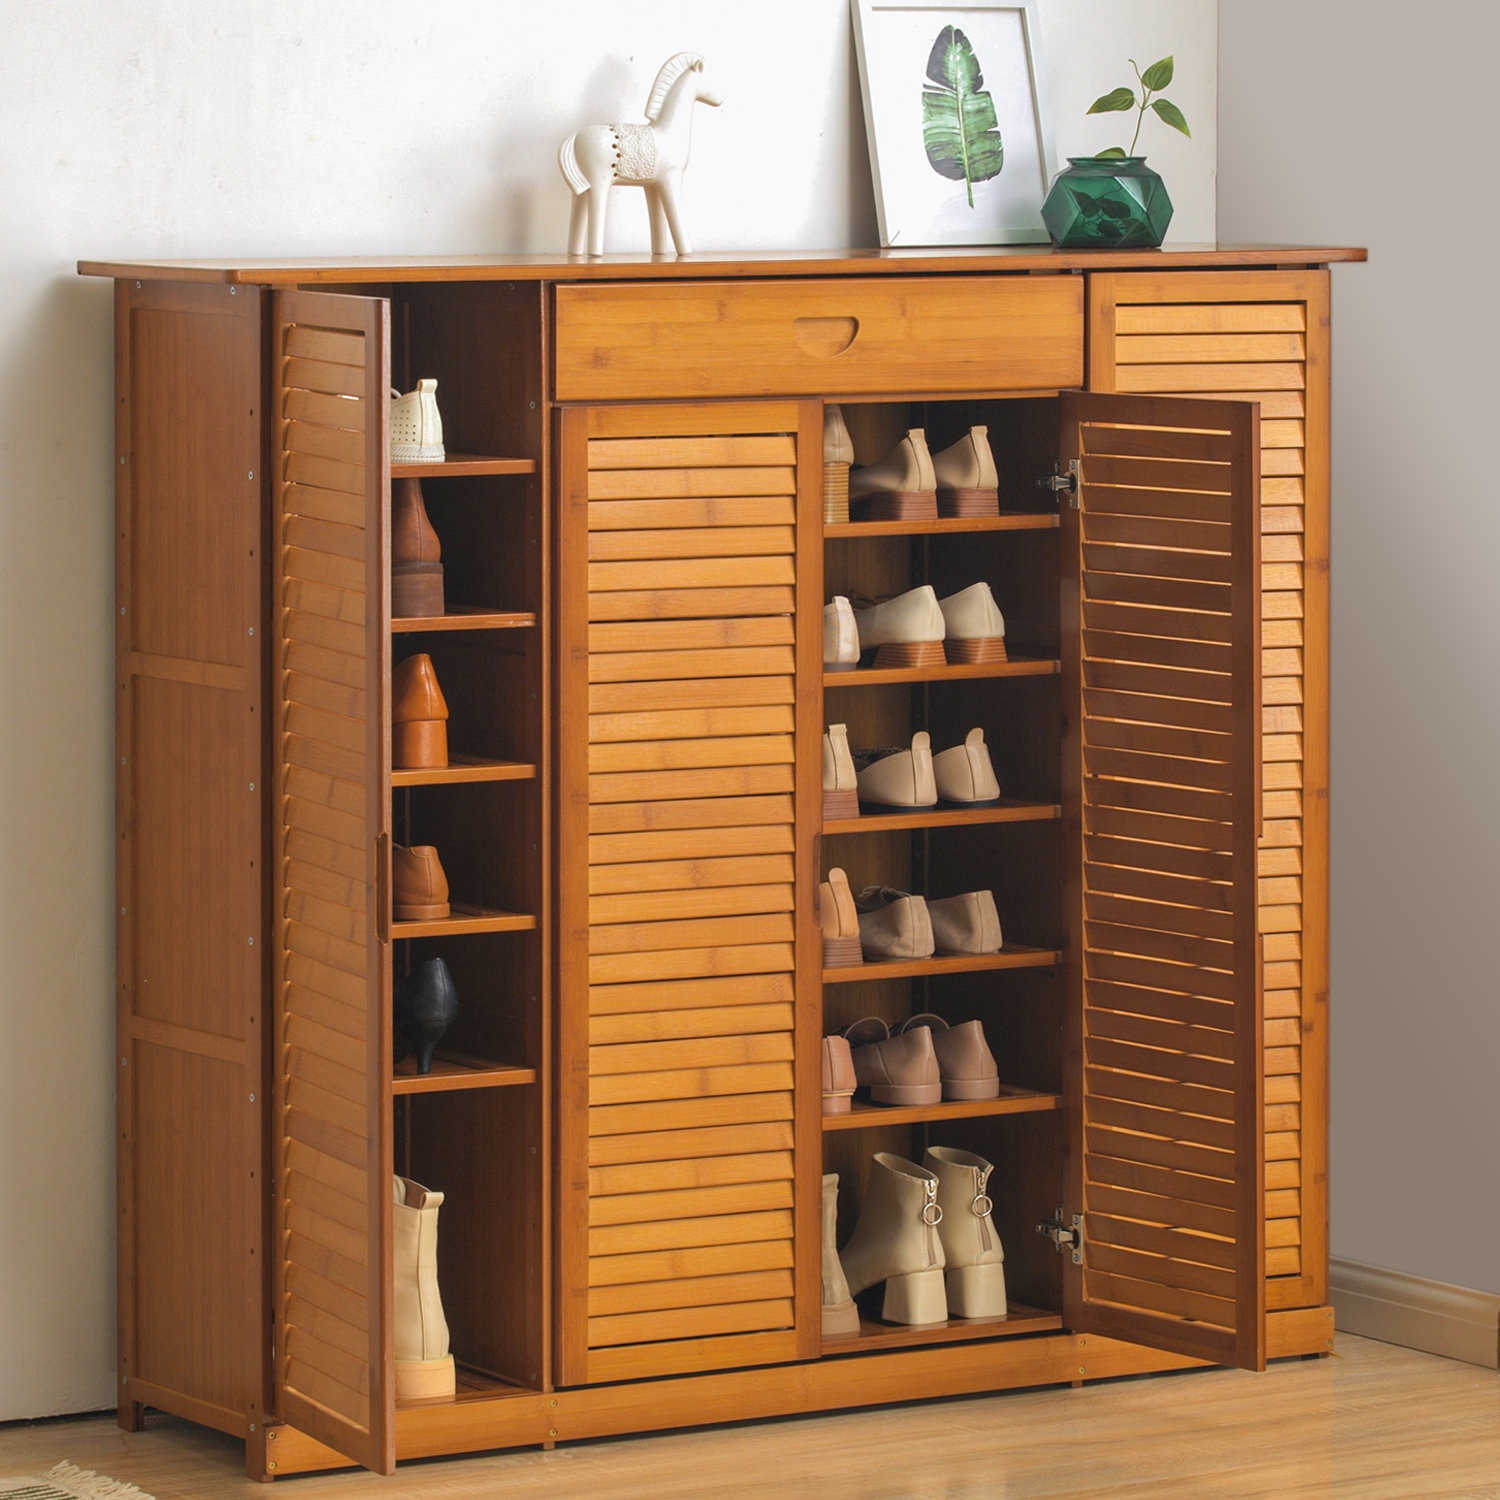 Small Free Standing Cabinets, Shoe Rack Cabinet Door